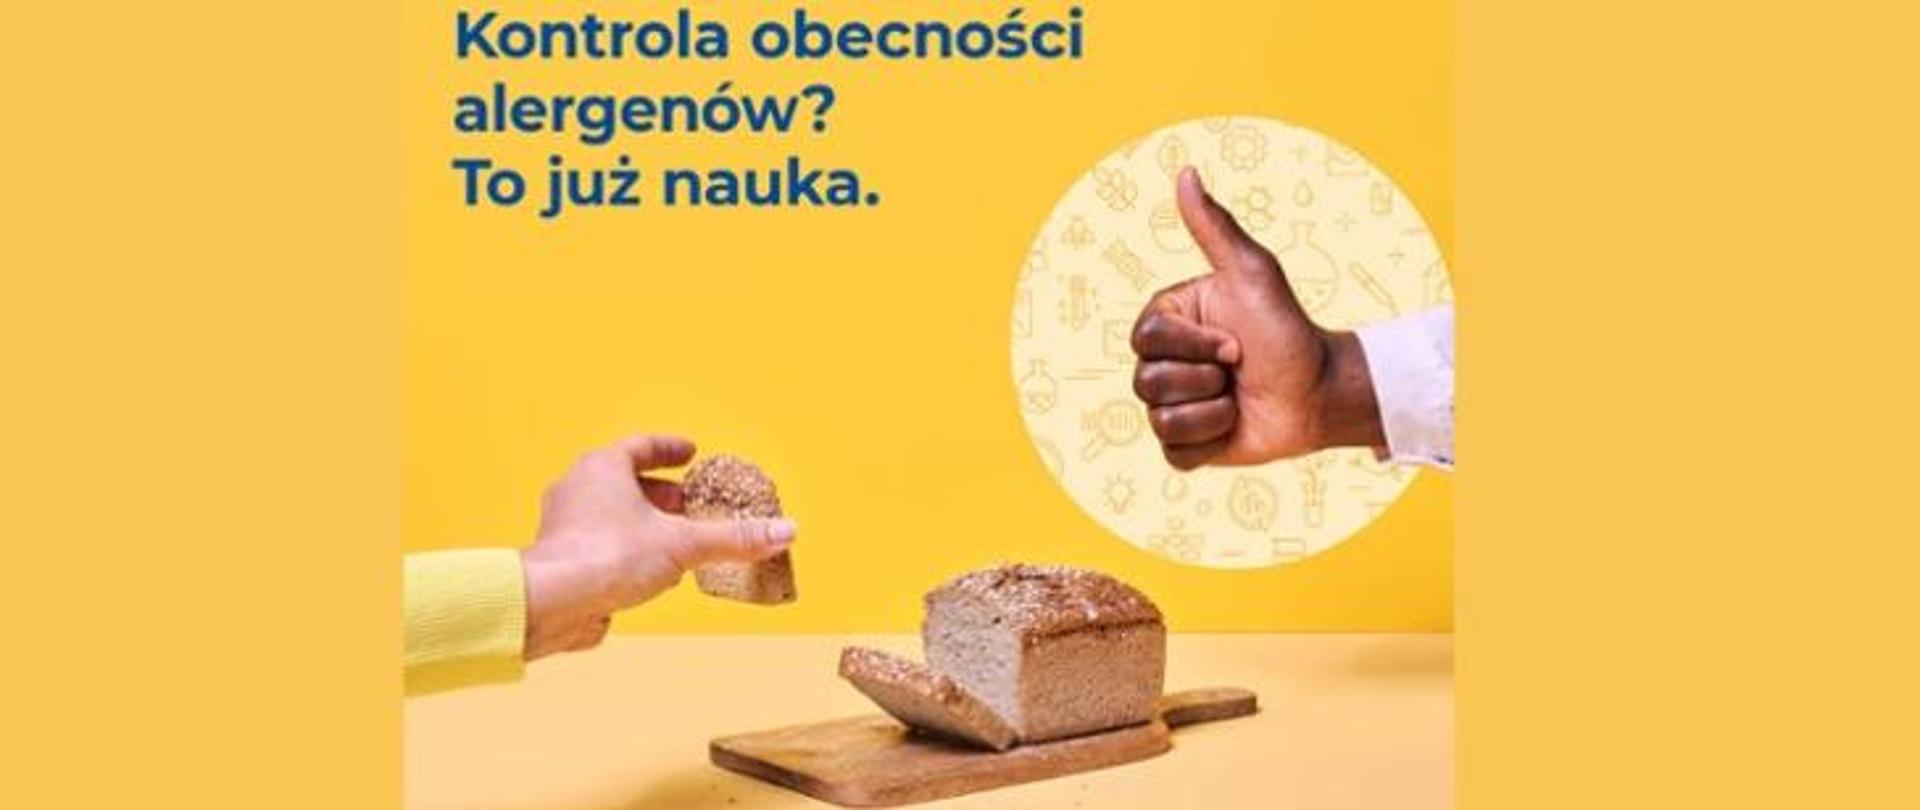 Alergeny - #EUChooseSafeFood - zdjęcie z chlebem i kciuk ok.